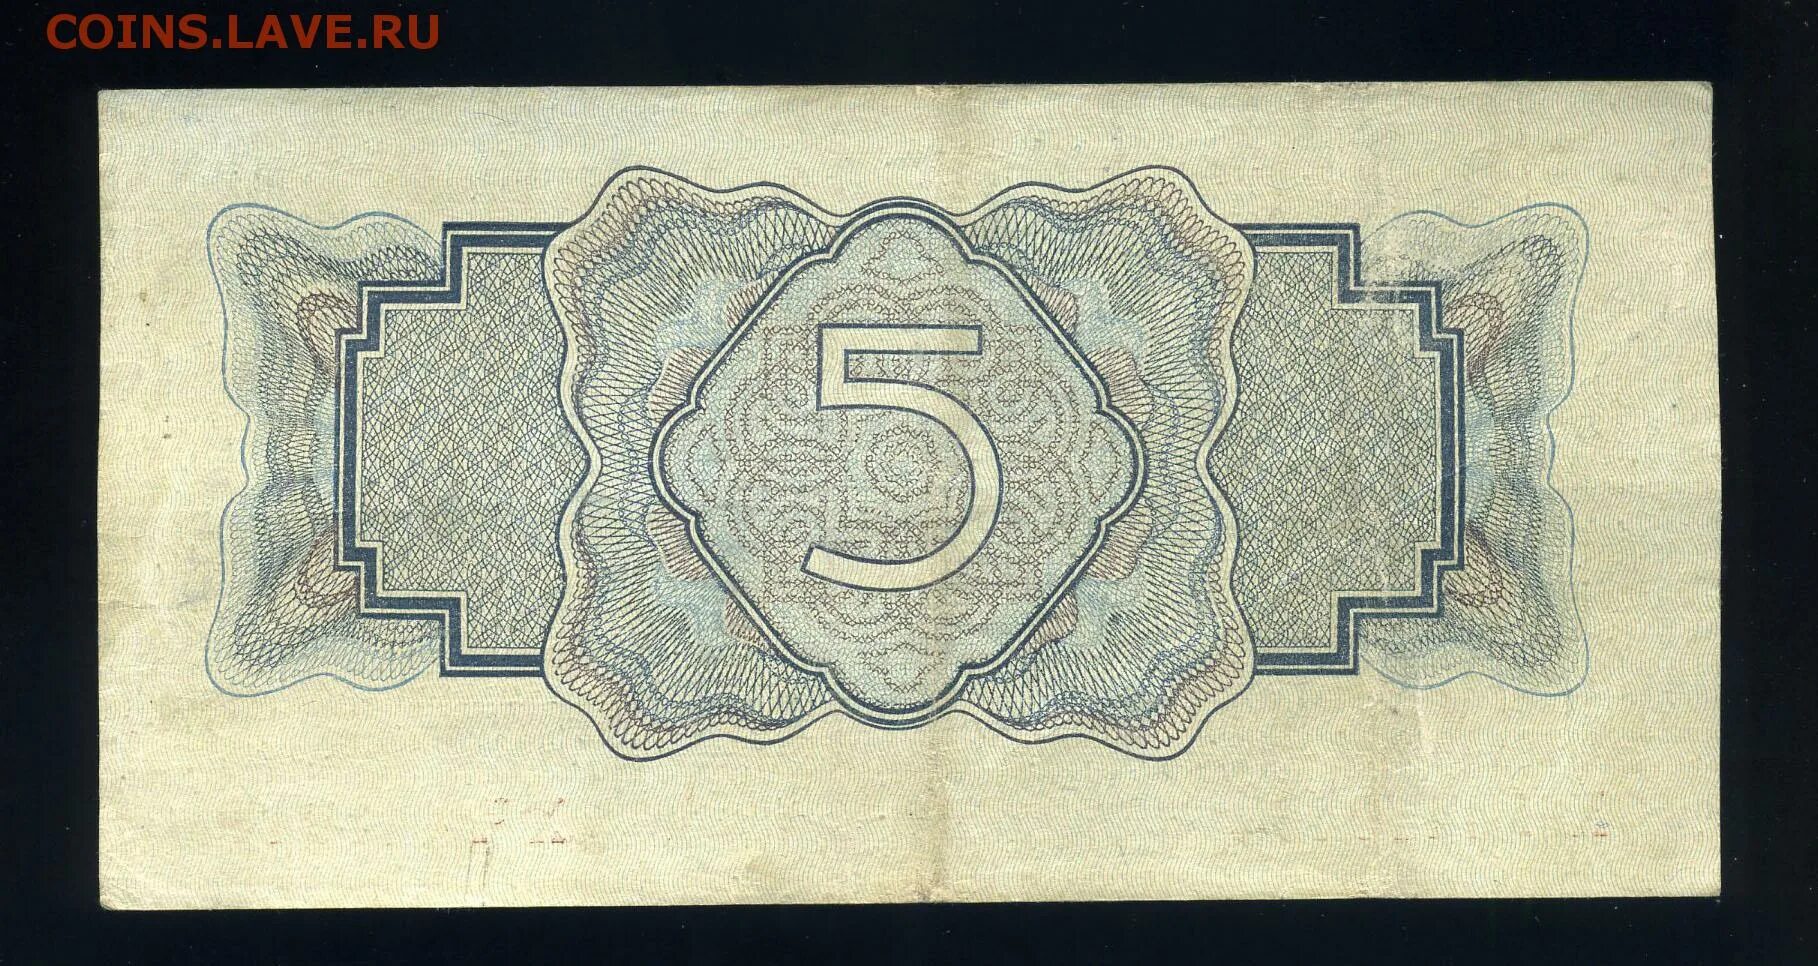 1934 год дымчатый монокристал. 5 Рублей 1934. 5 Рублей 1925 года. Бумажный рубль 1934 года. Денежный знак 5 рублей 1925.